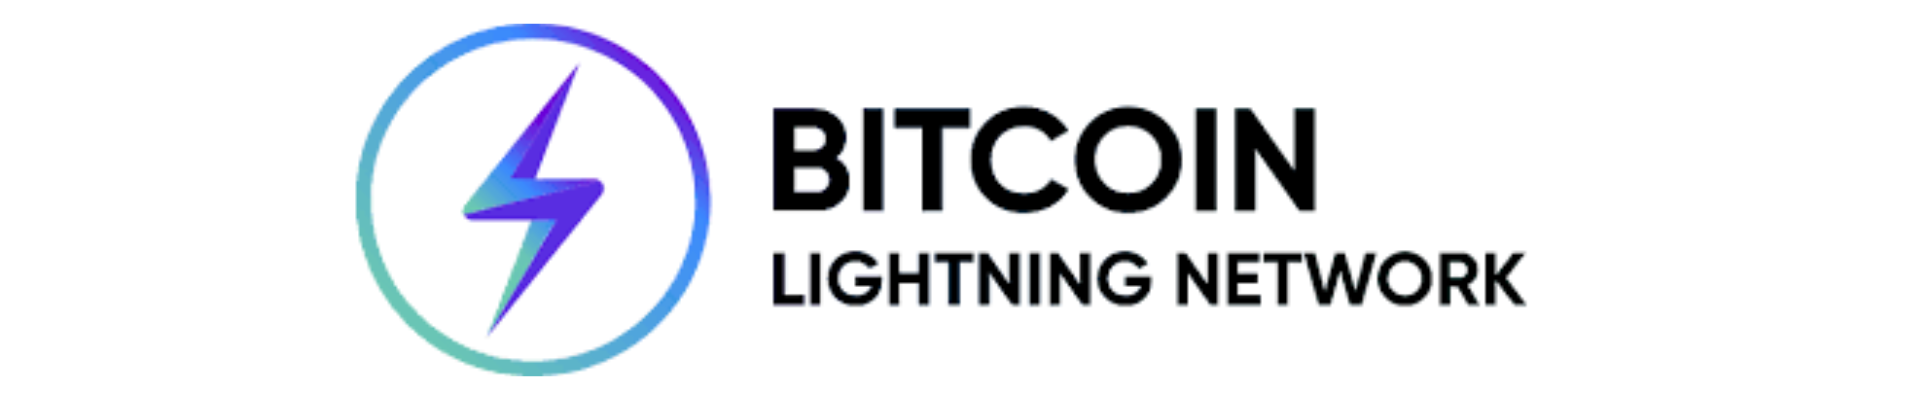 logo-Lightning-Network